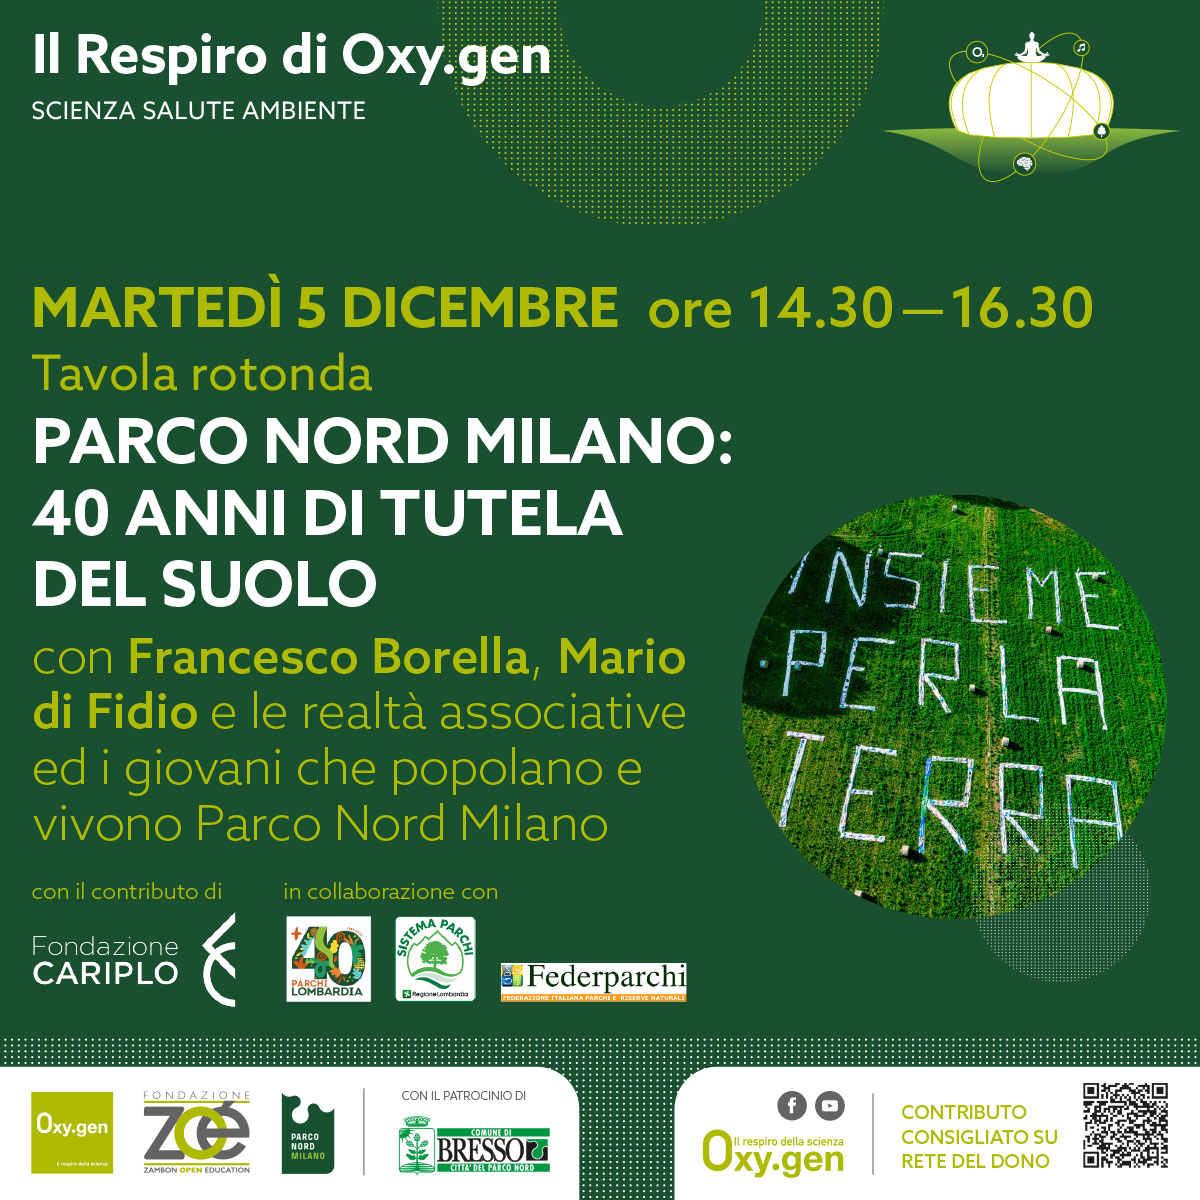 Parco Nord Milano: 40 anni di tutela del suolo